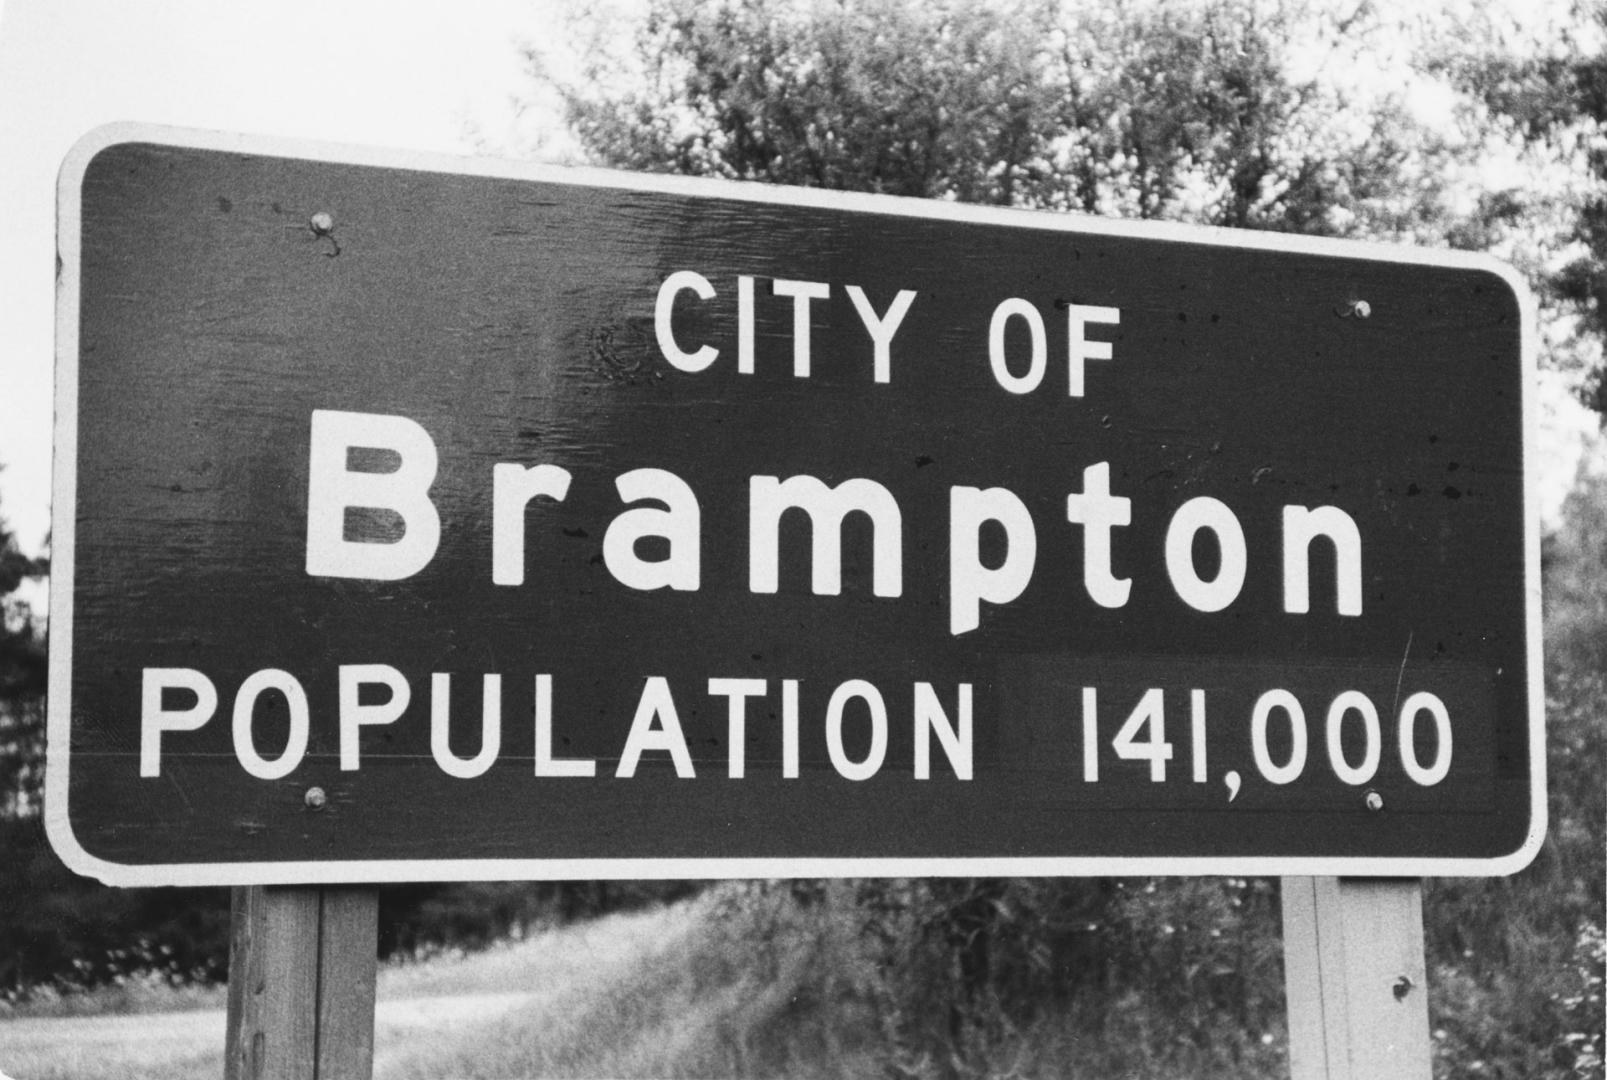 City of Brampton sign. Brampton, Ontario